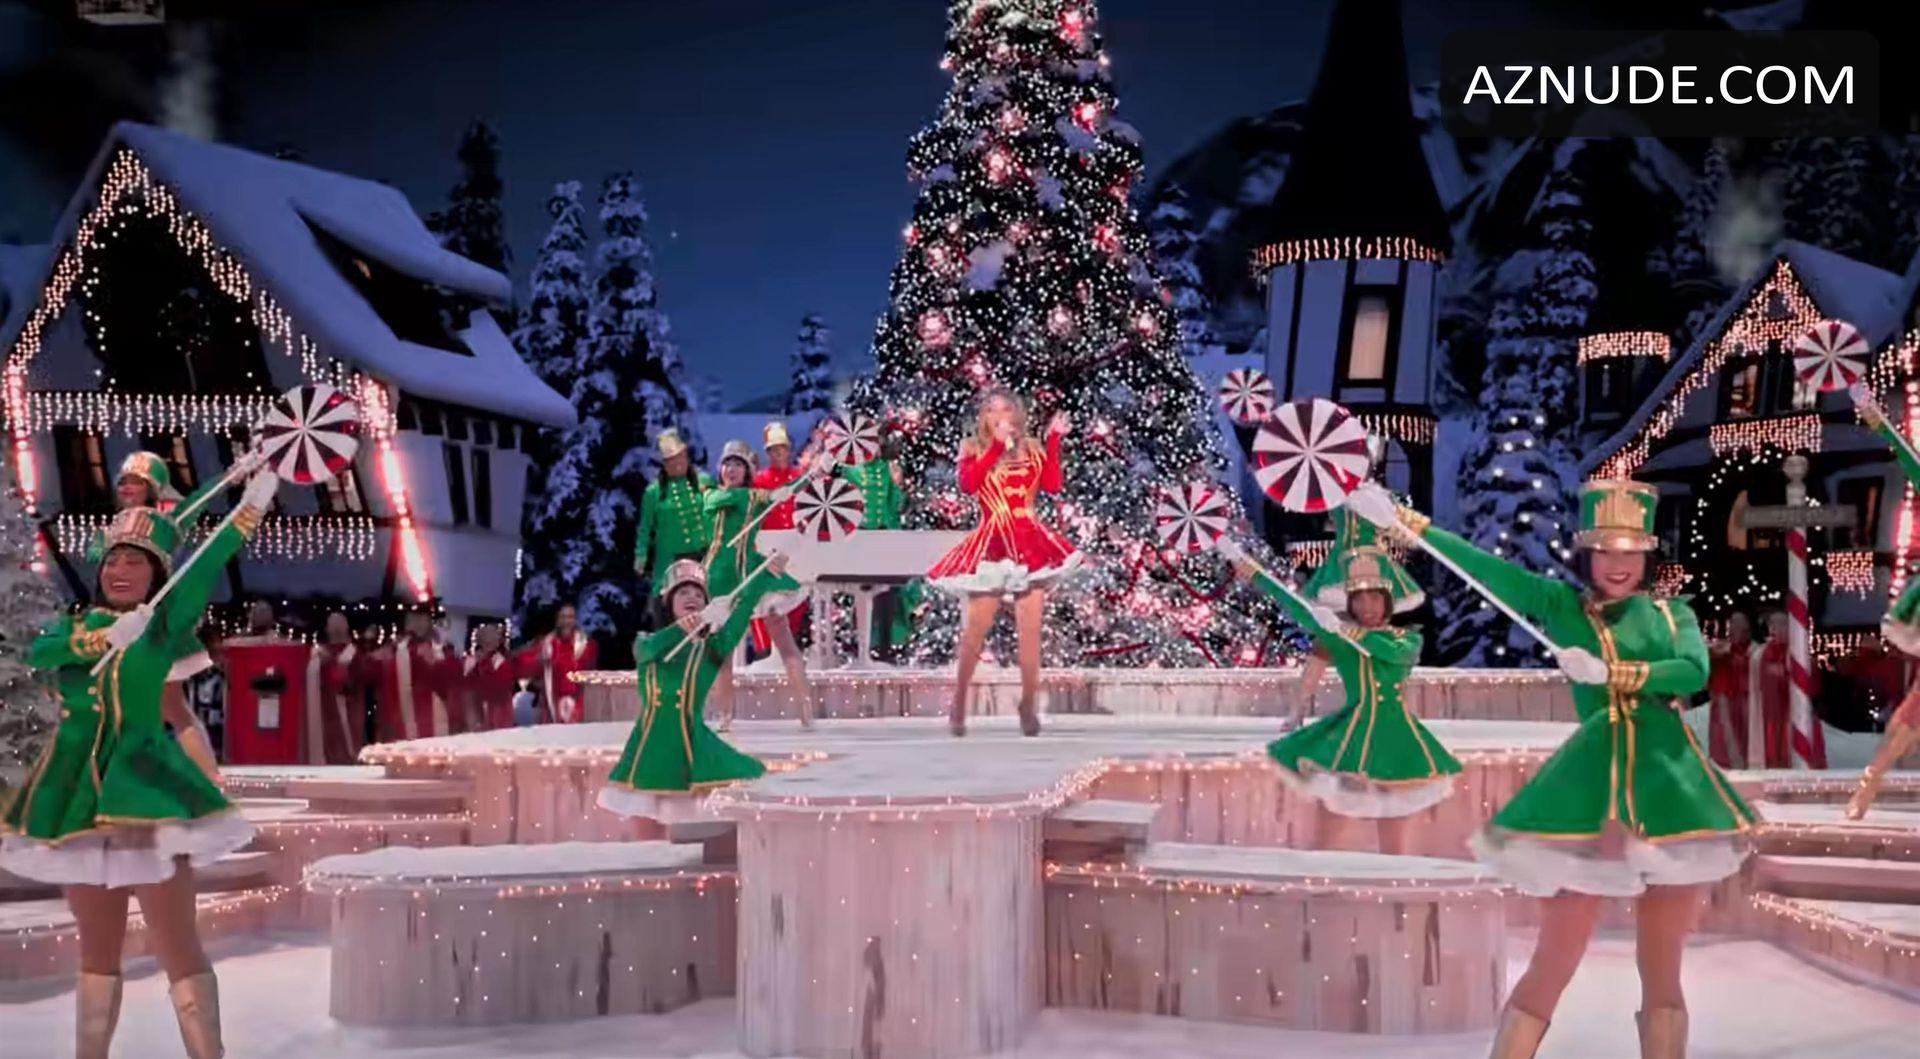 Mariah Careys Magical Christmas Special On Appletv Aznude 